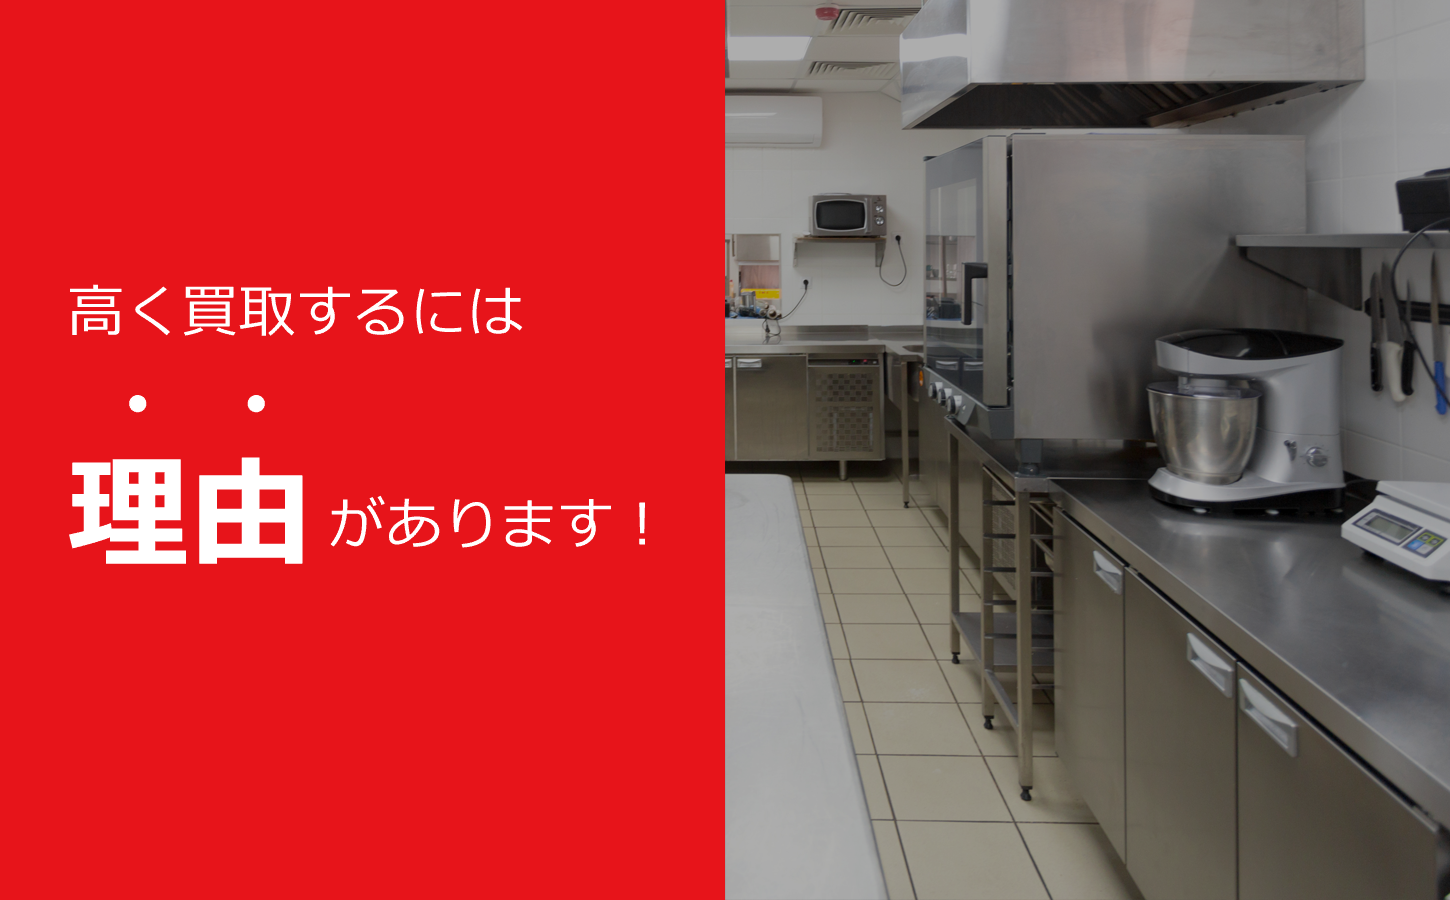 名古屋市・愛知県で厨房機器を高額買取致します